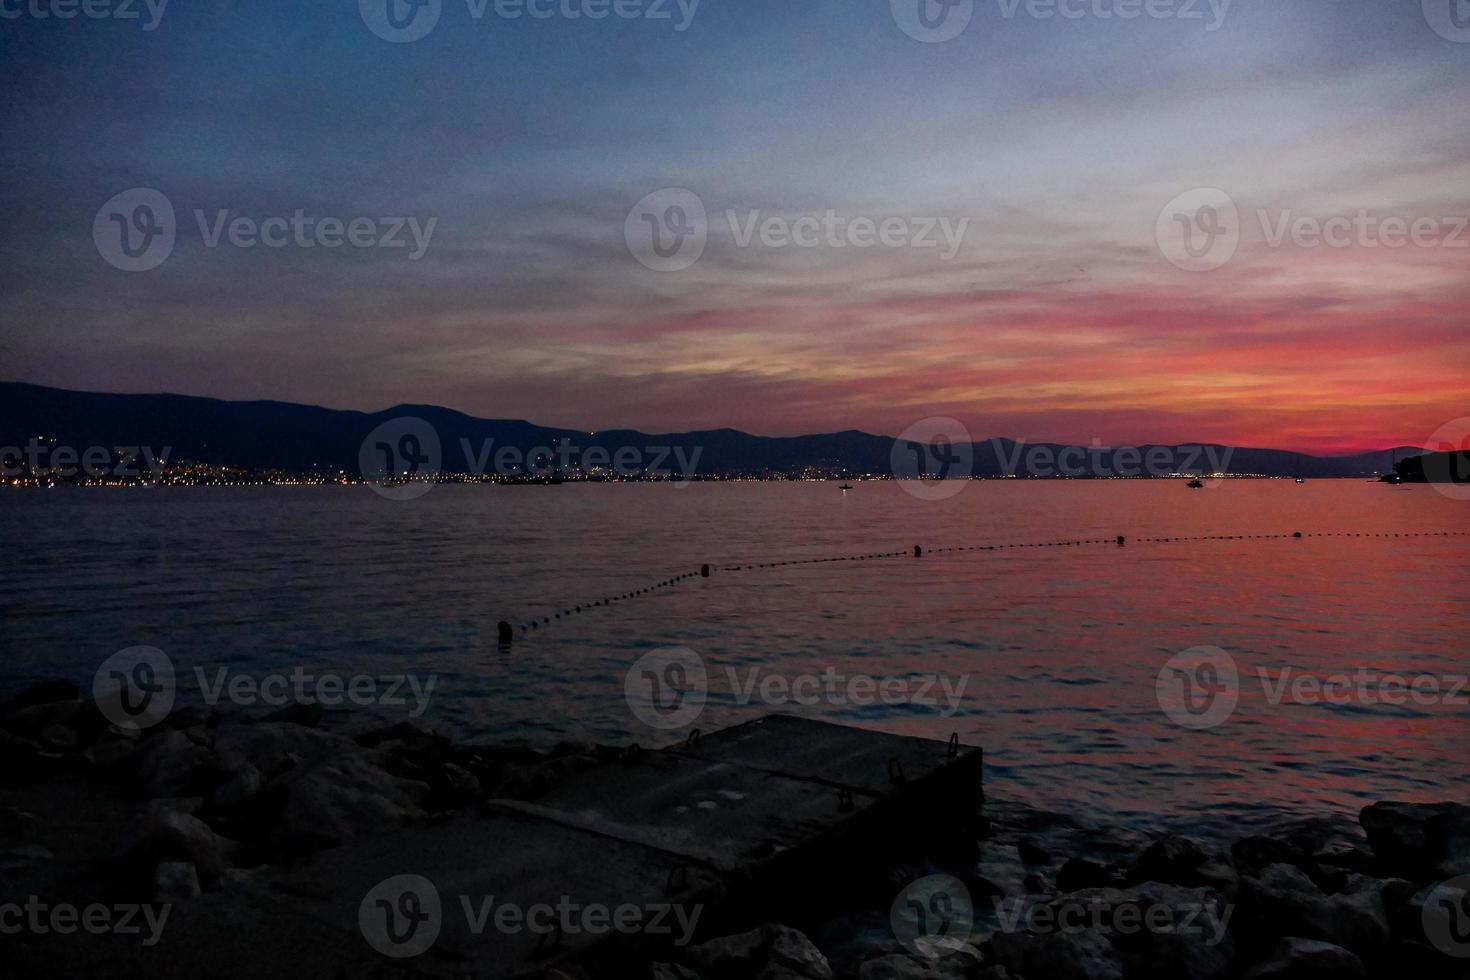 de adriatisch zee in Kroatië foto